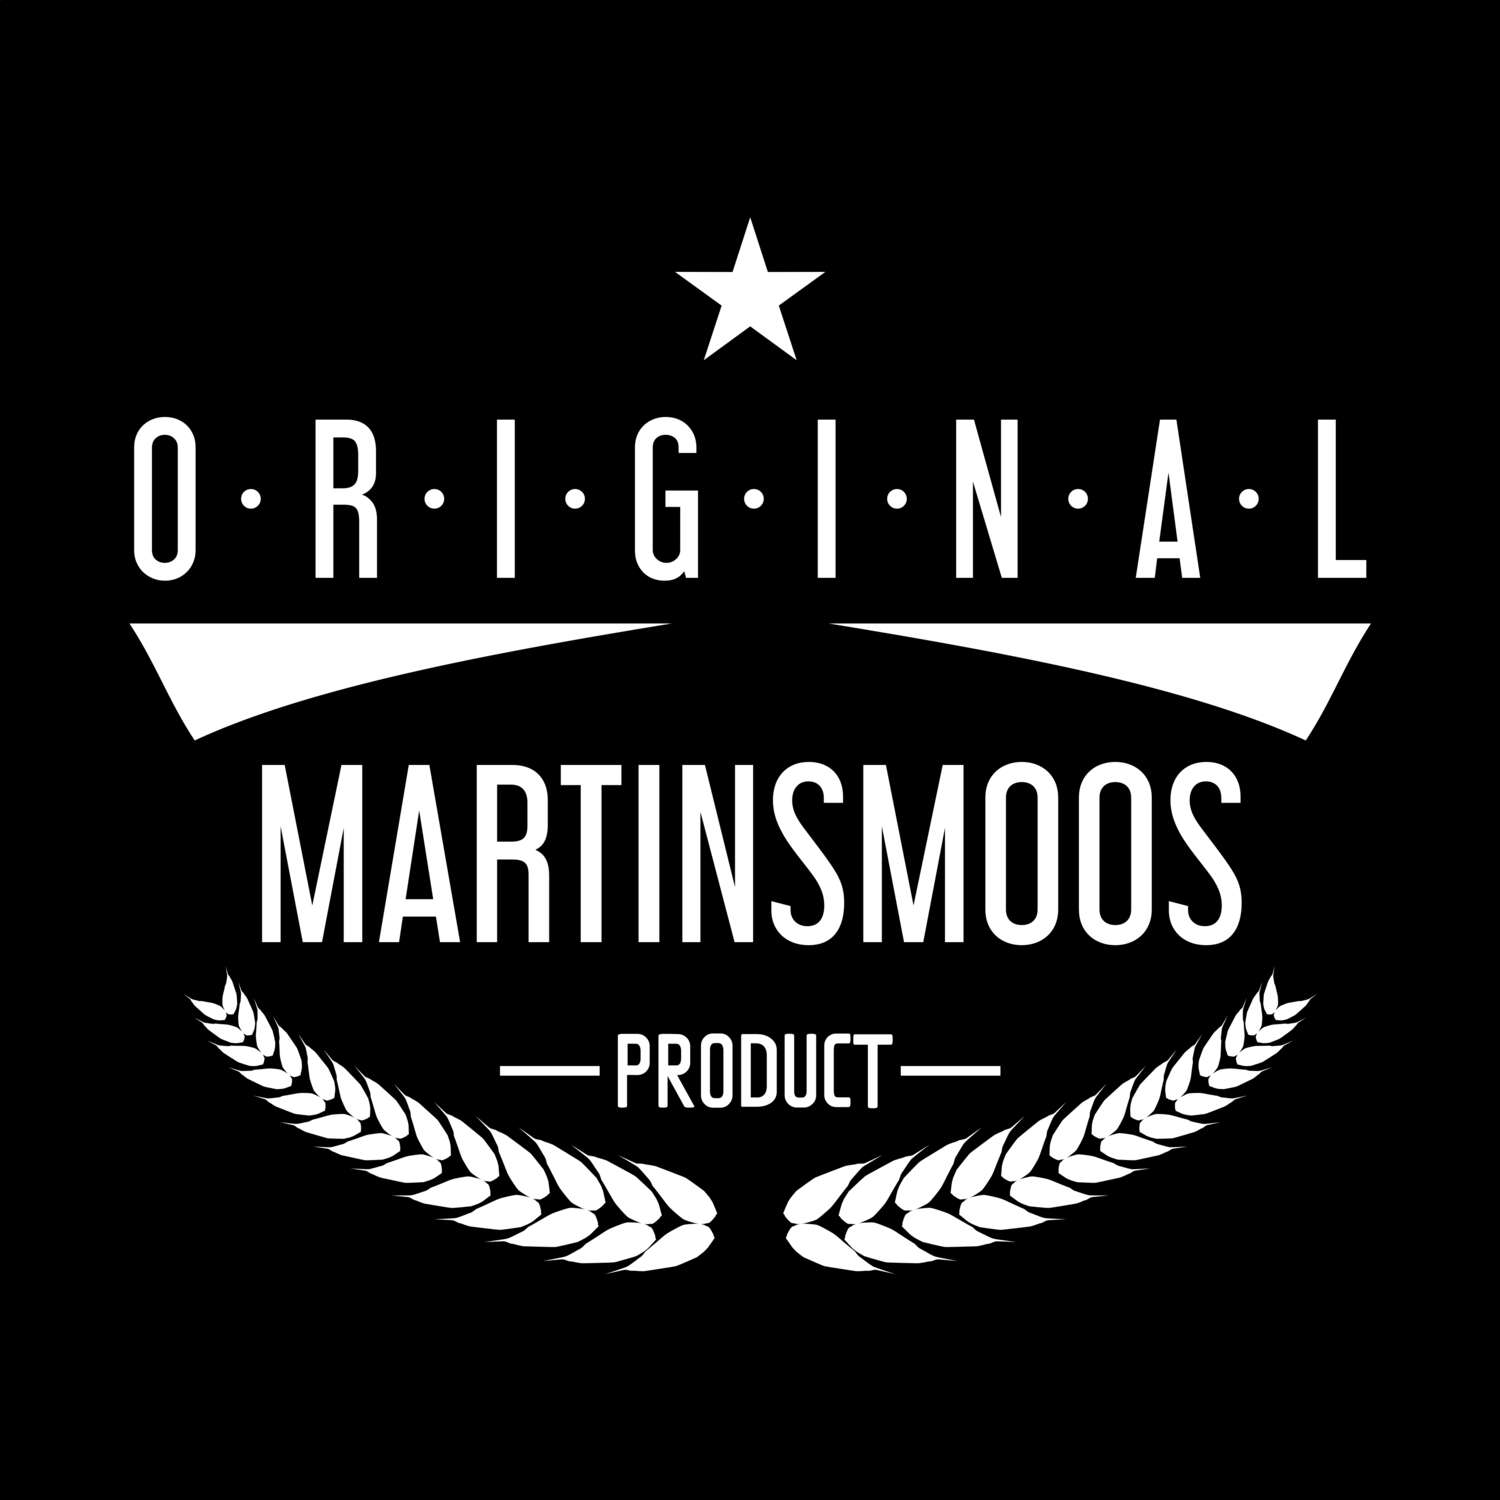 Martinsmoos T-Shirt »Original Product«